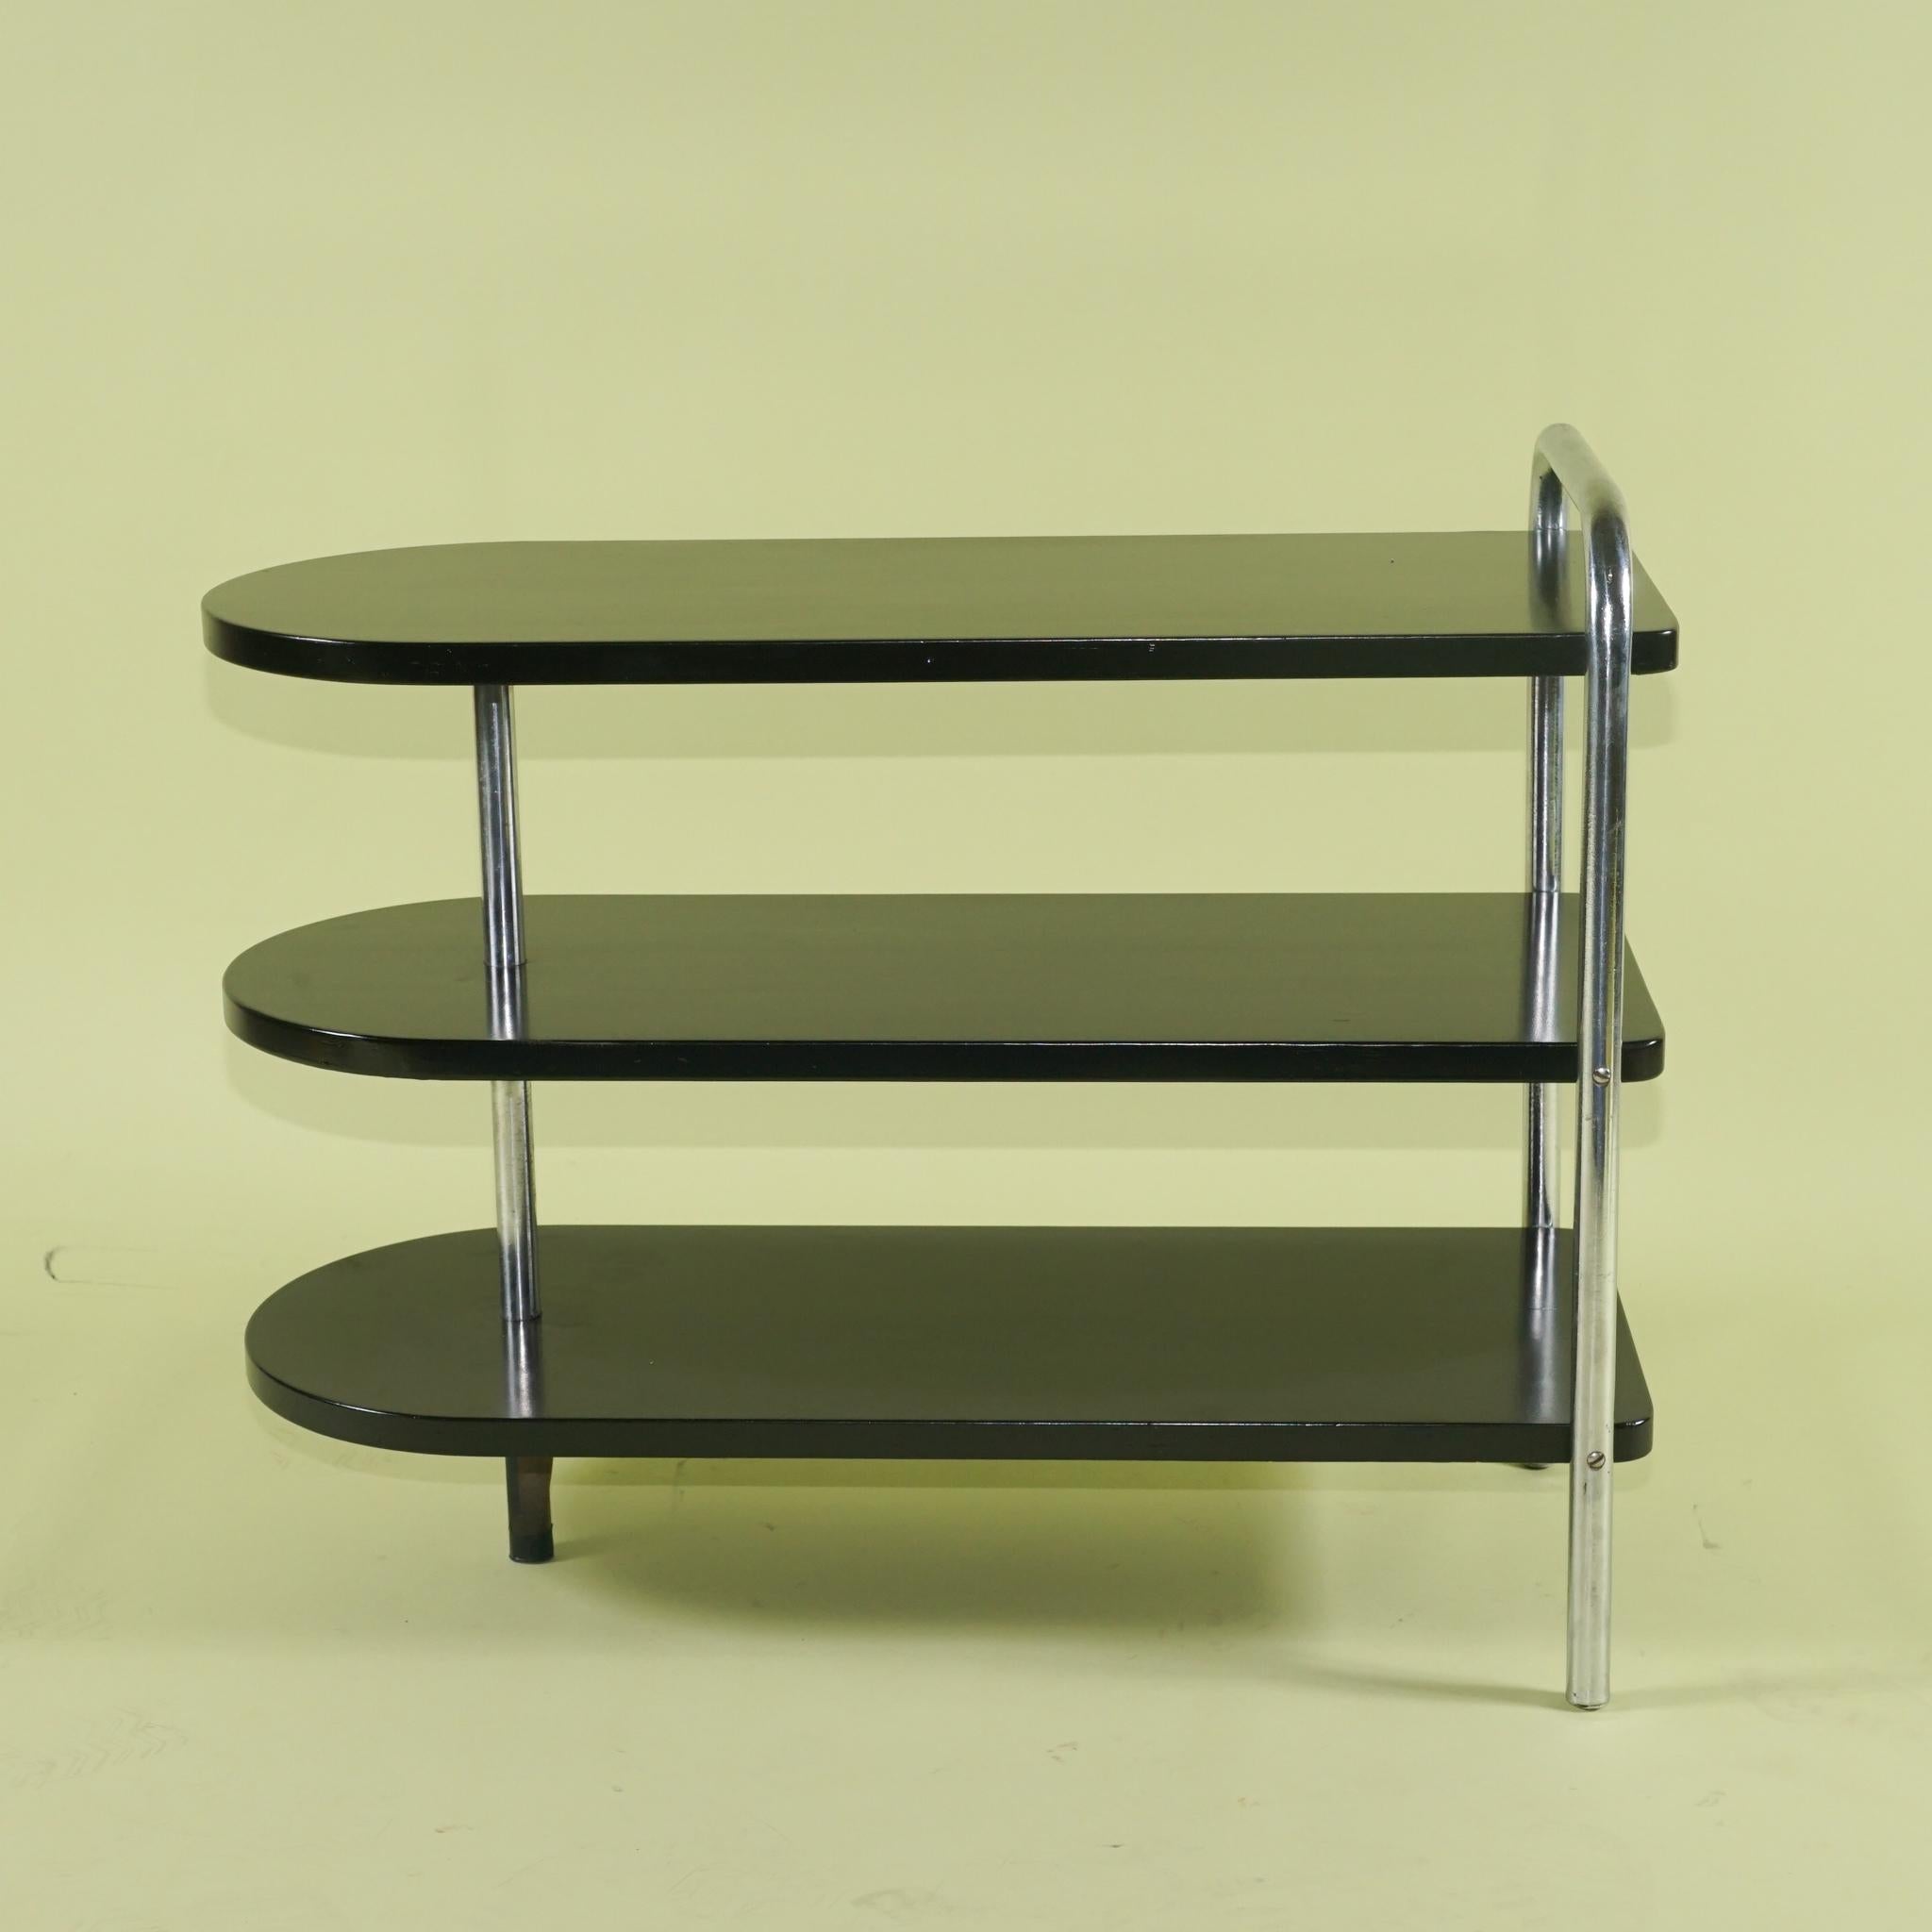 Cette paire de tables basses modernistes conçues par Wolfgang Hoffmann pour Howell a été fabriquée vers 1938 et est en excellent état, presque d'origine. Le chrome est entièrement d'origine et ne présente pratiquement aucune piqûre ou décoloration.